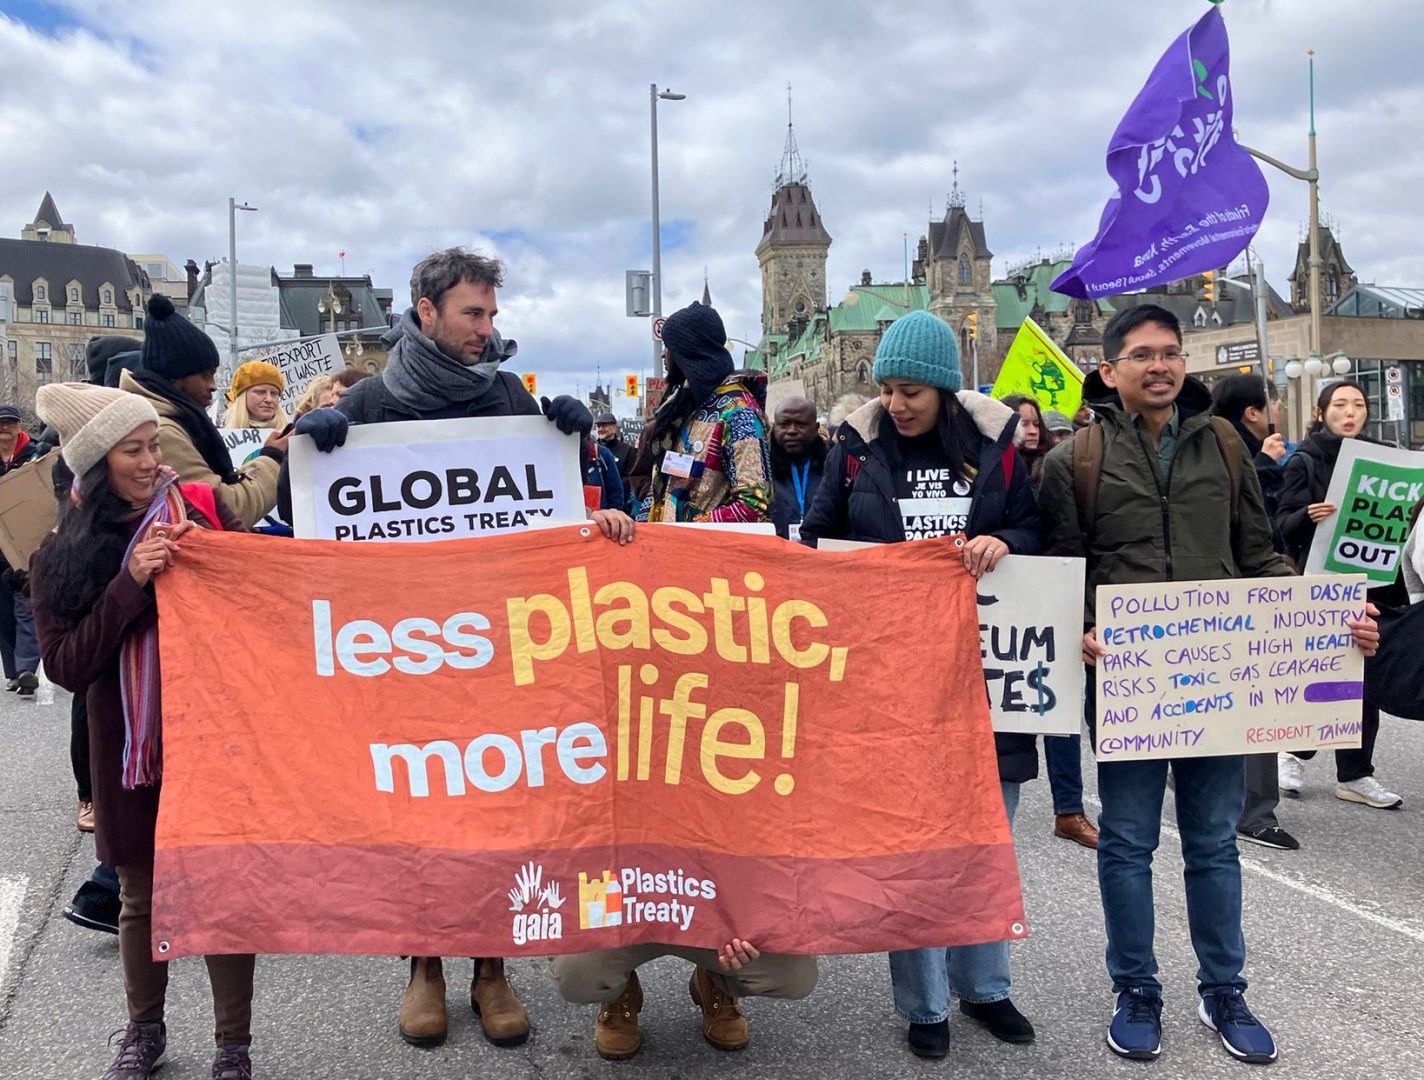 来自亚太地区的 GAIA 成员参加在加拿大渥太华举行的结束塑料时代游行